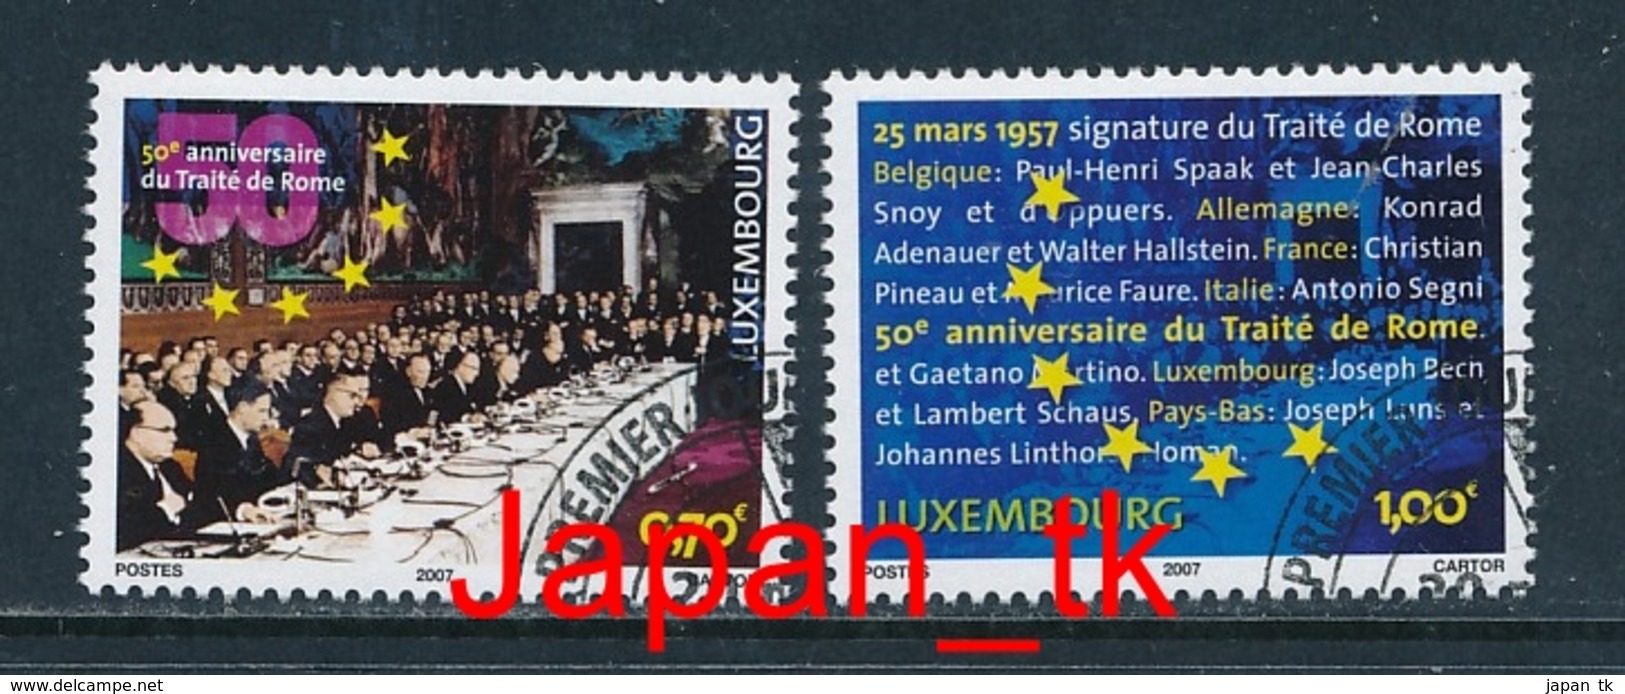 LUXEMBURG Mi. Nr. 1734-1735 50 Jahre Römische Verträge - Europa Mitläufer - 2007 - Used - 2007